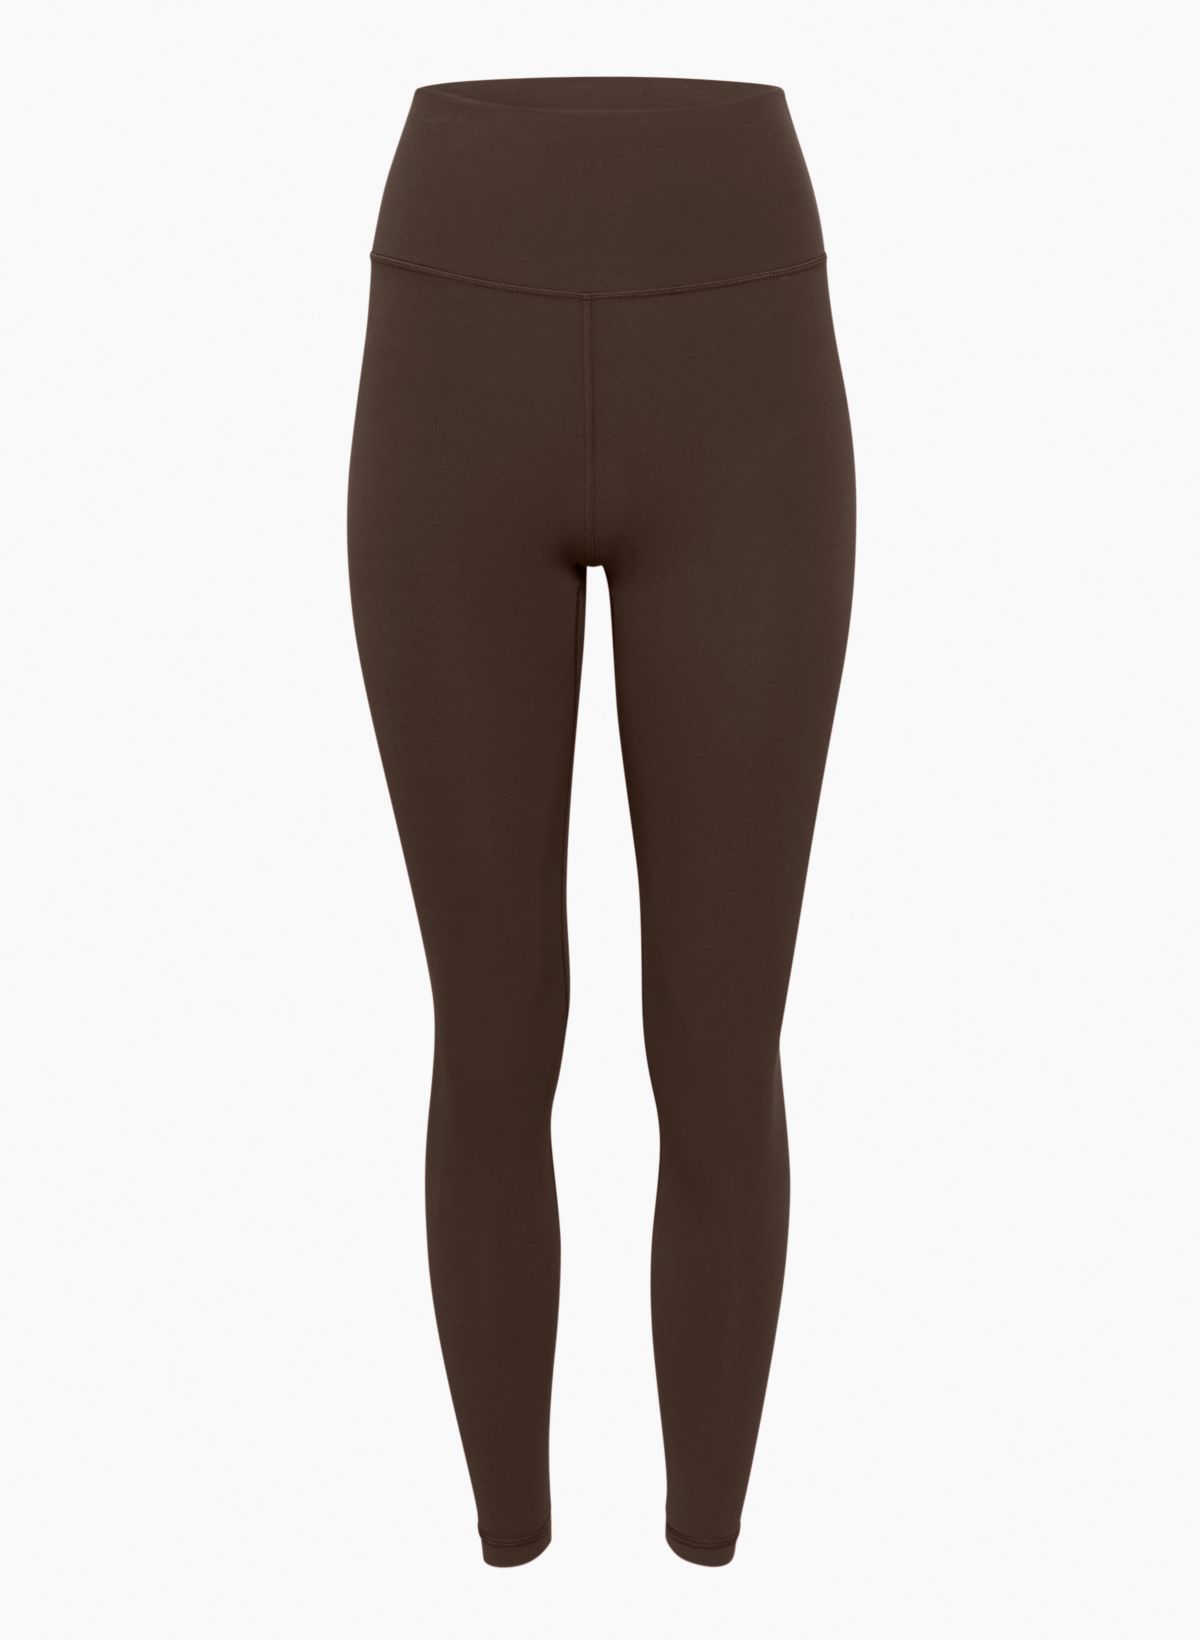 High waist thermal leggings in dark brown, 4.99€